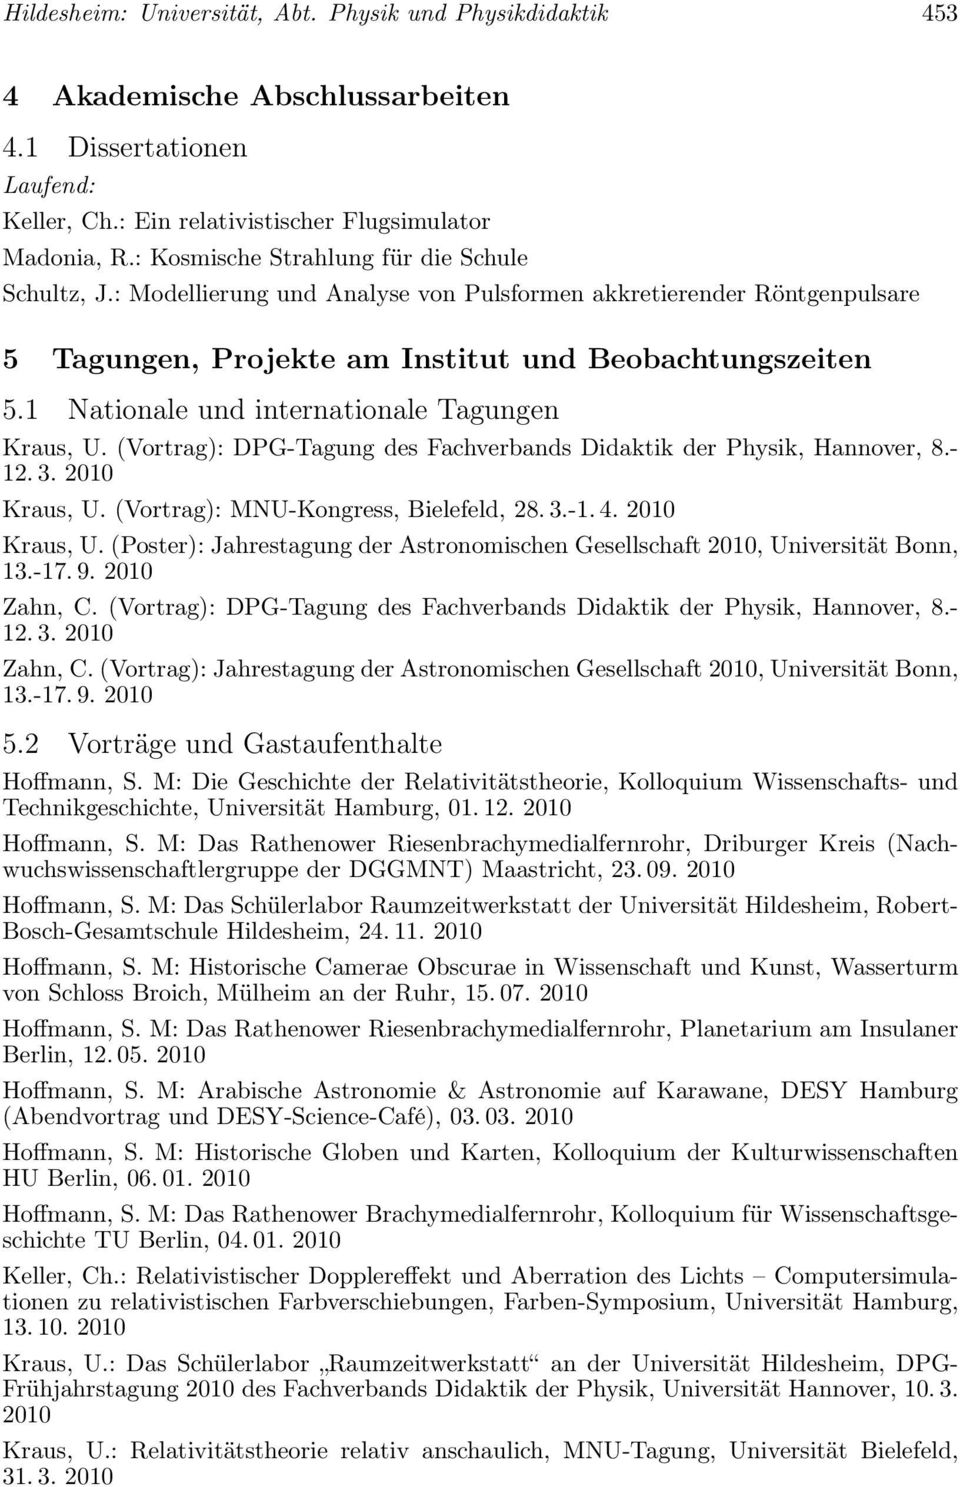 1 Nationale und internationale Tagungen Kraus, U. (Vortrag): DPG-Tagung des Fachverbands Didaktik der Physik, Hannover, 8.- 12.3. 2010 Kraus, U. (Vortrag): MNU-Kongress, Bielefeld, 28.3.-1.4.